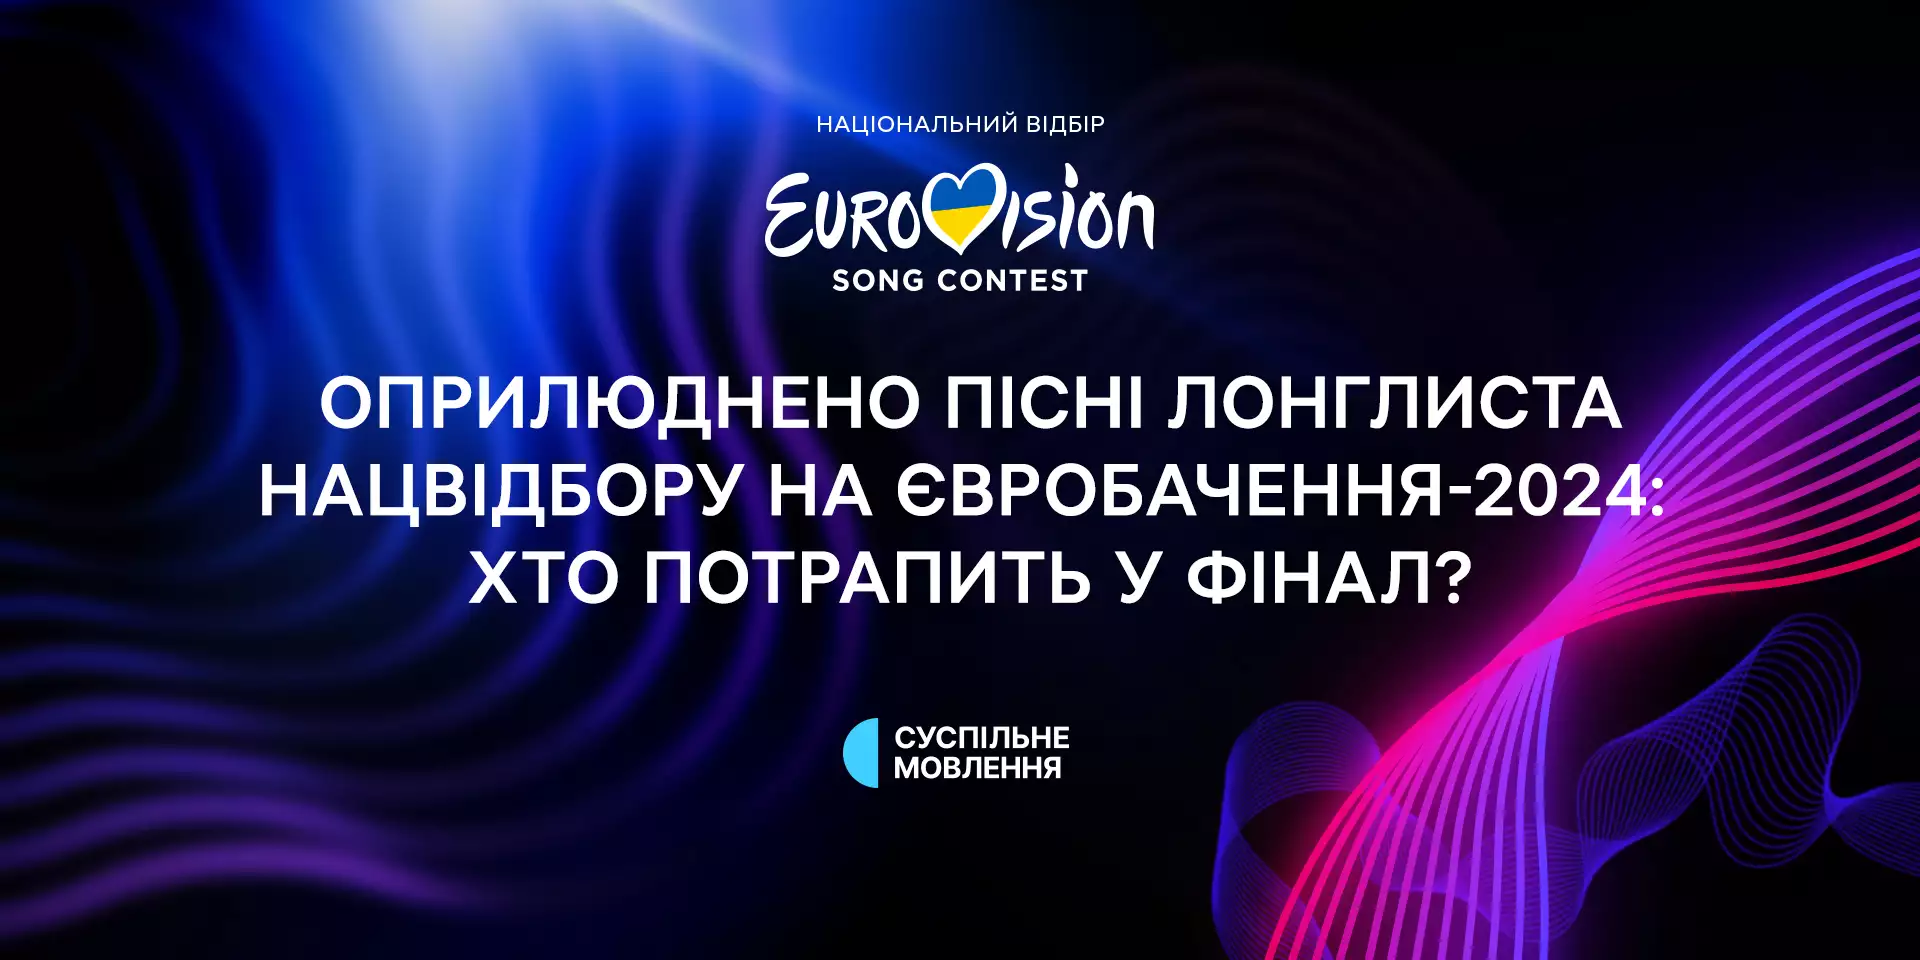 Глядачі обиратимуть ще одного фіналіста Національного відбору на «Євробачення-2024»